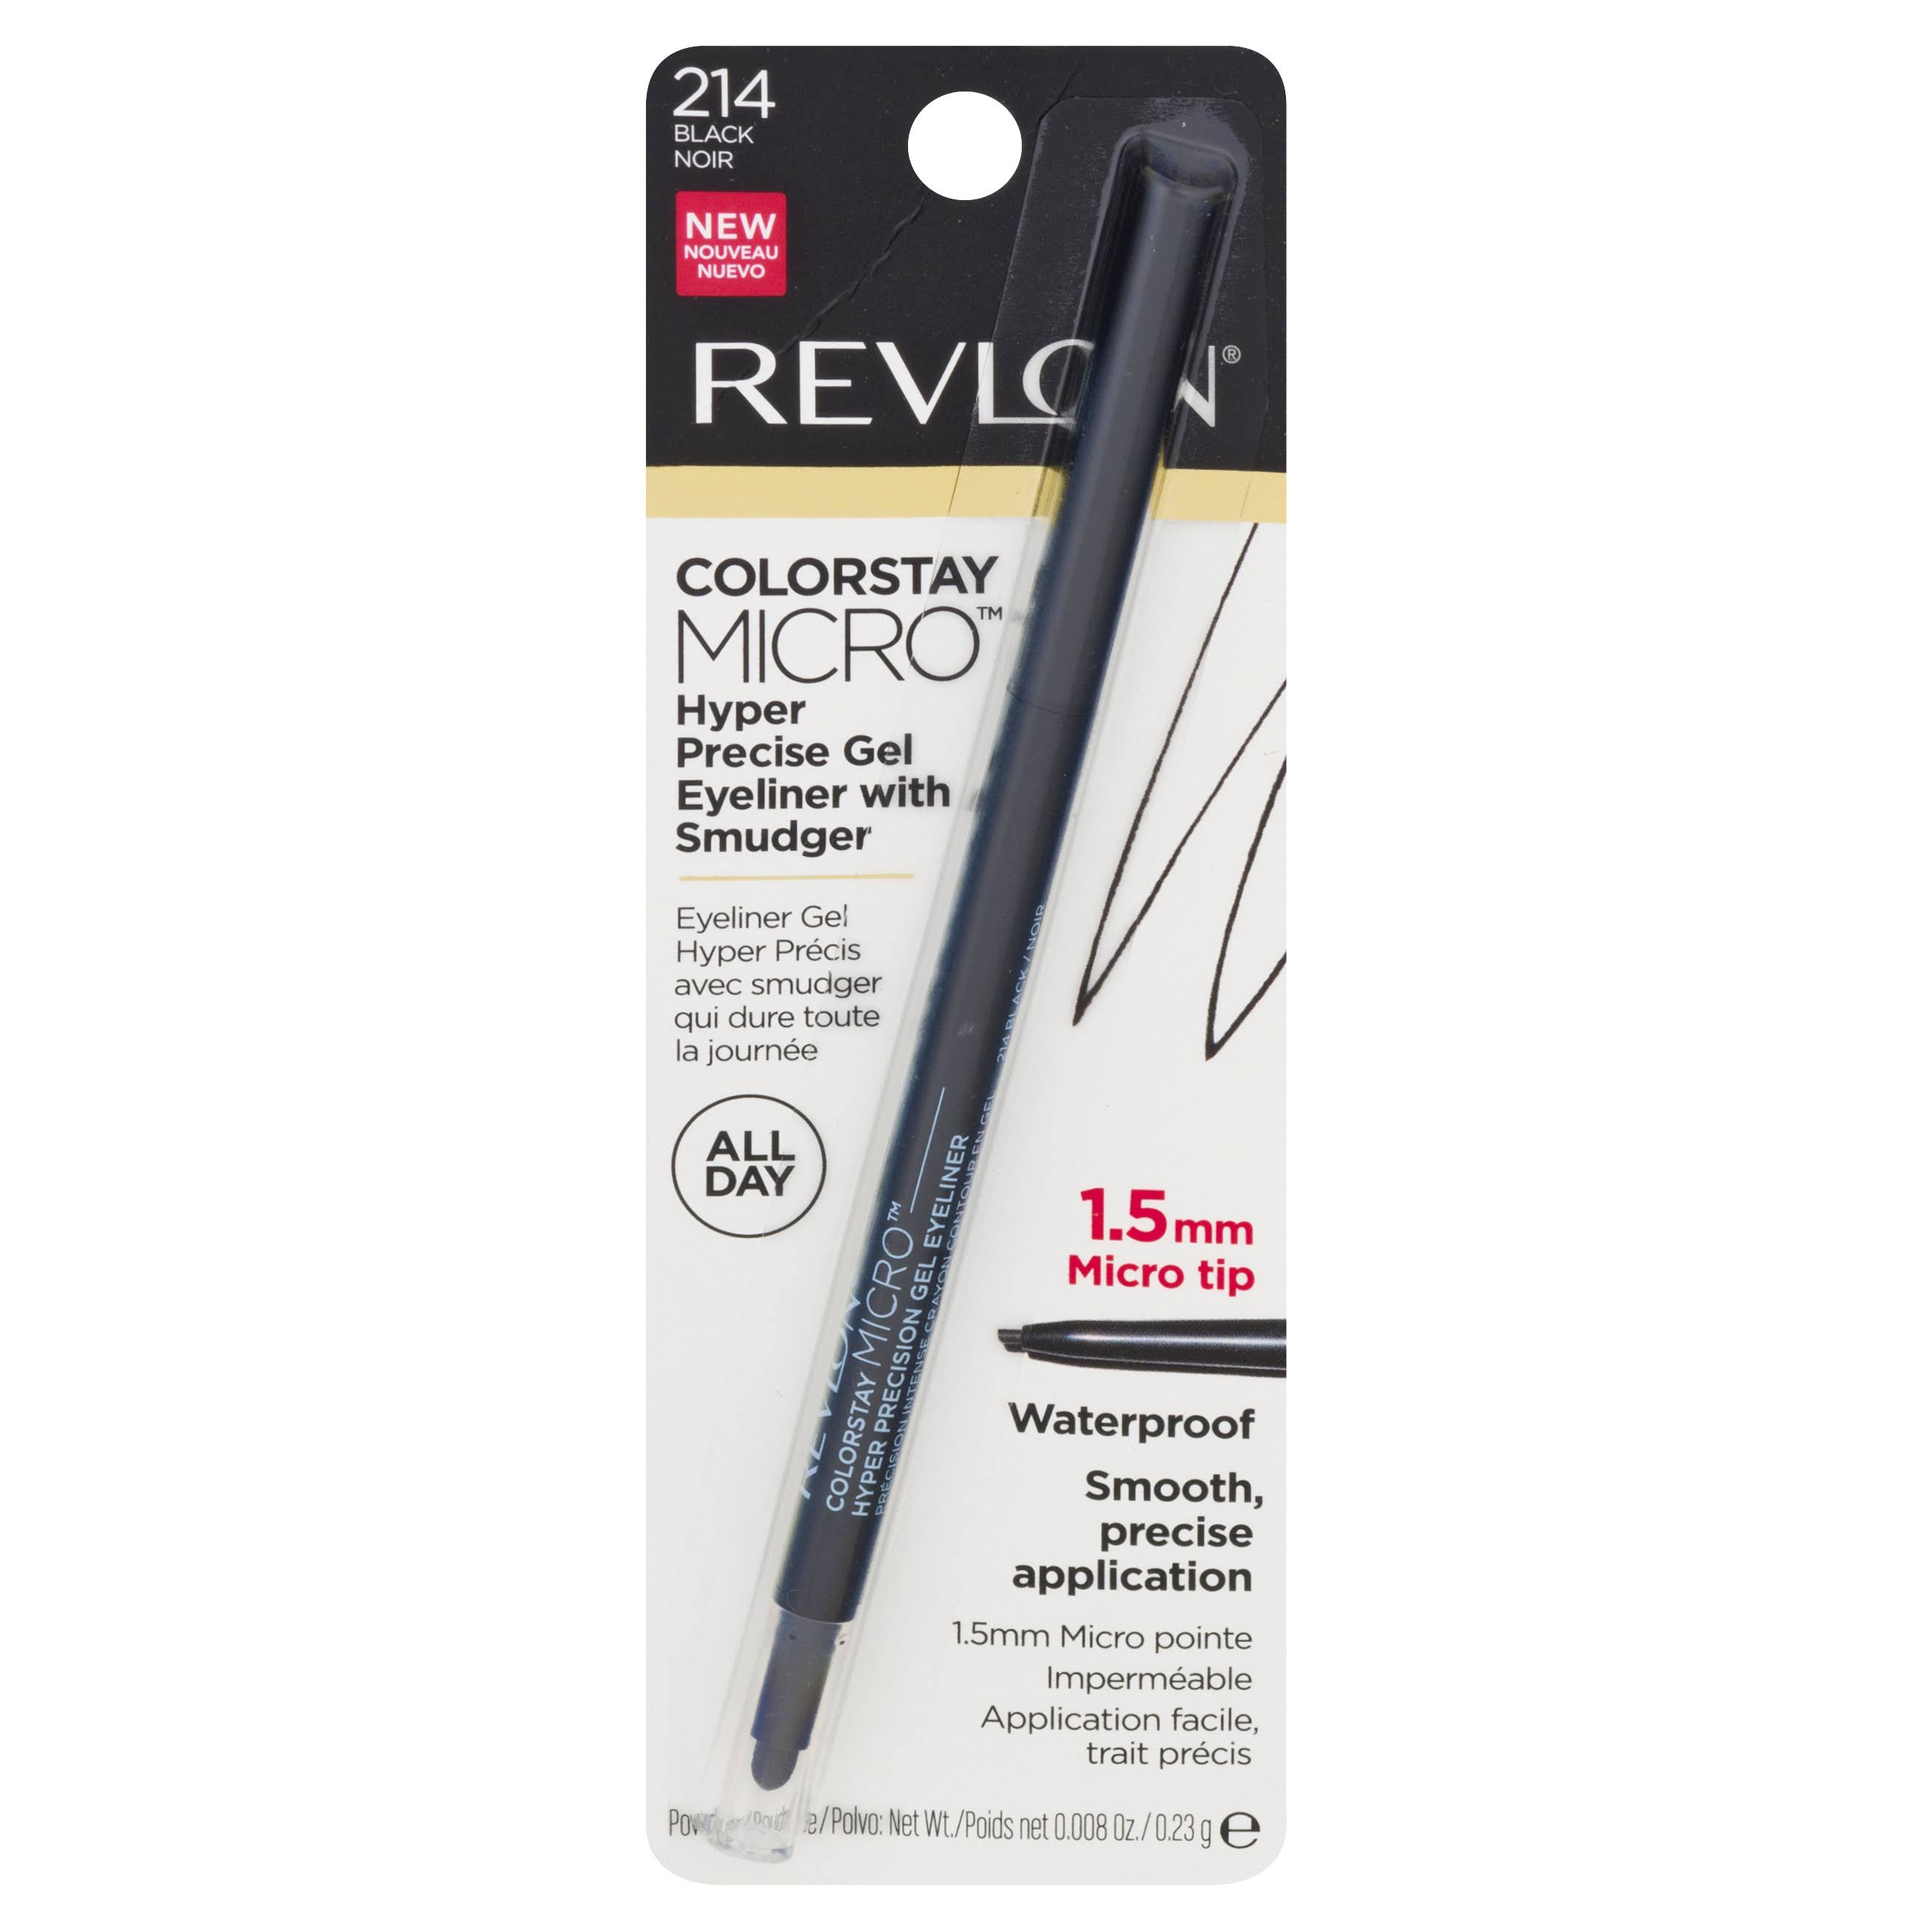 Revlon ColorStay Micro Hyper Precision Gel Eyeliner, Waterproof, Long